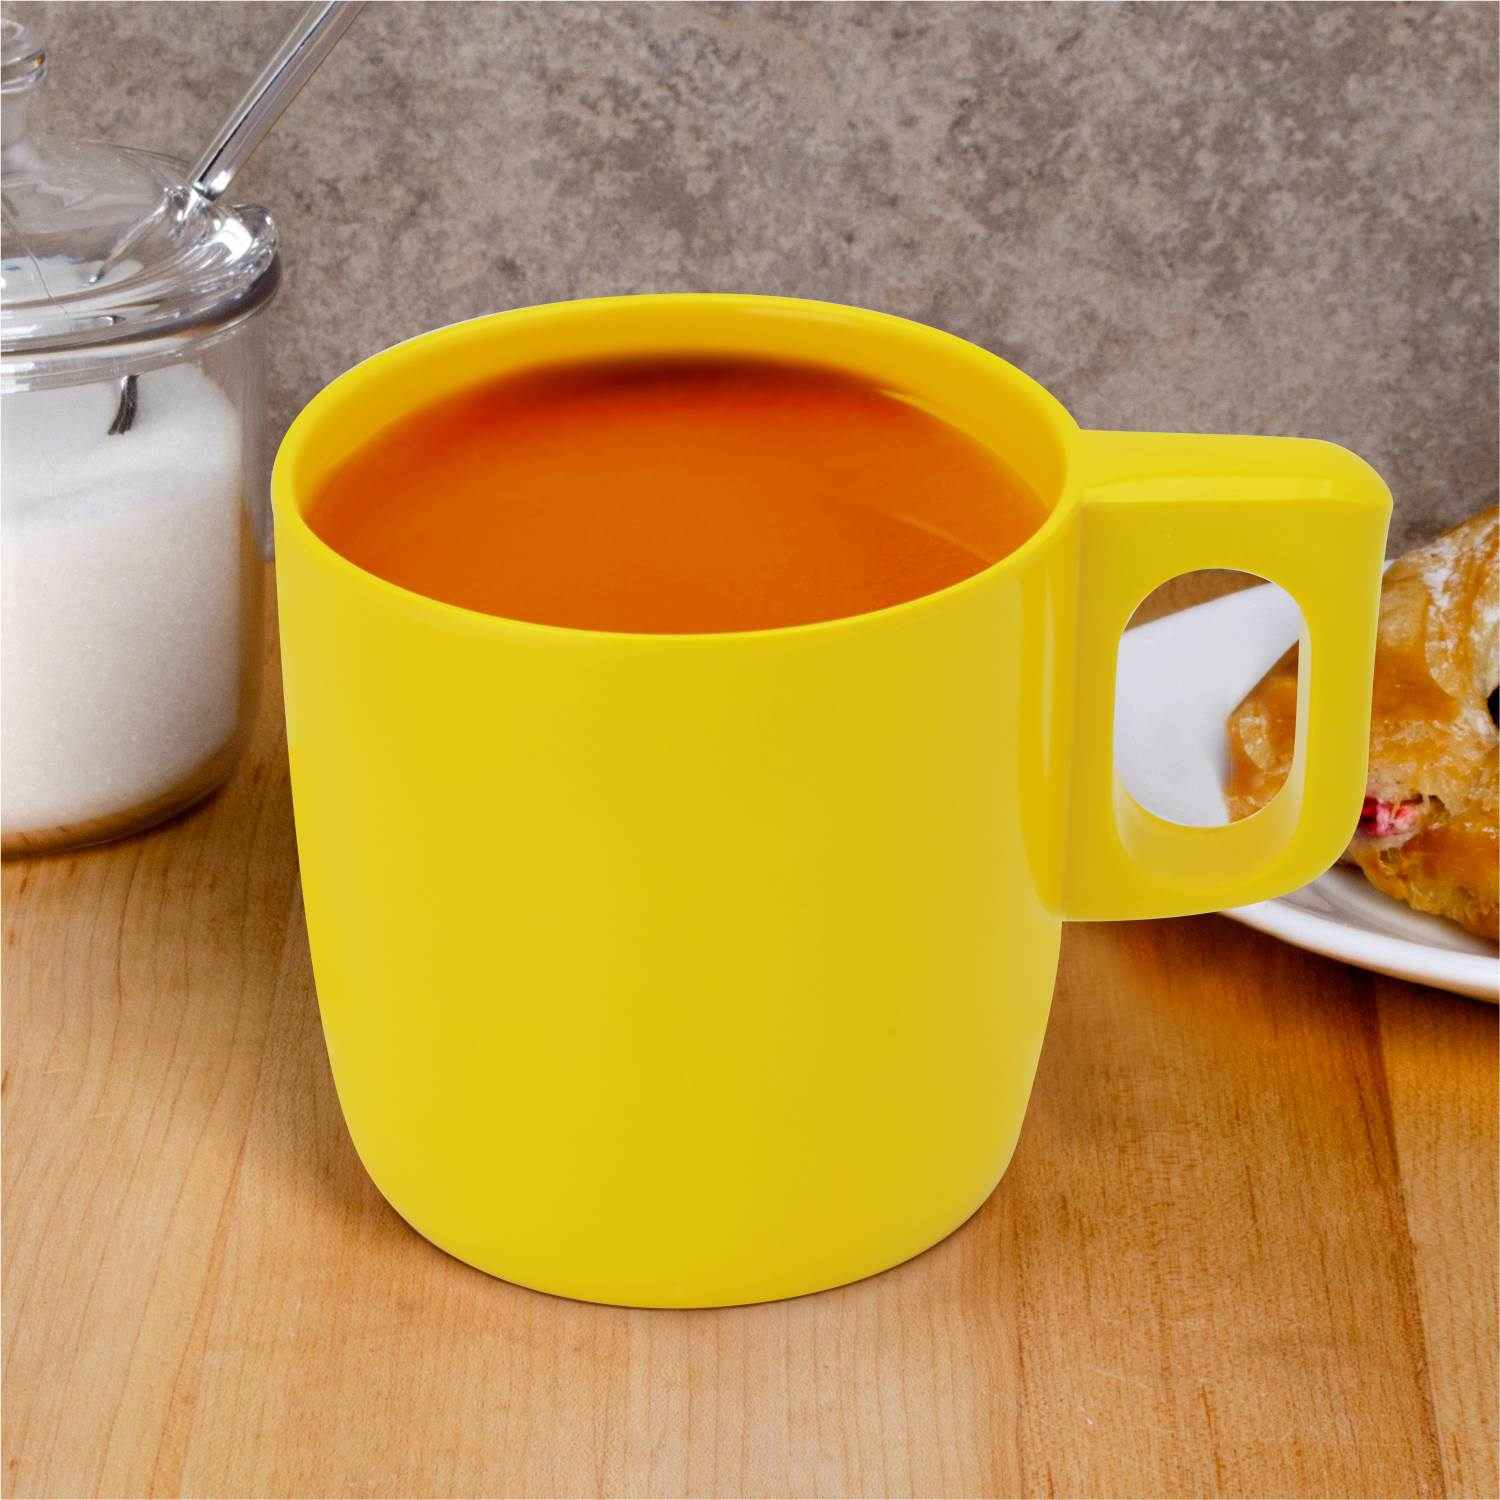 Dinewell Melamine Coffee Mug